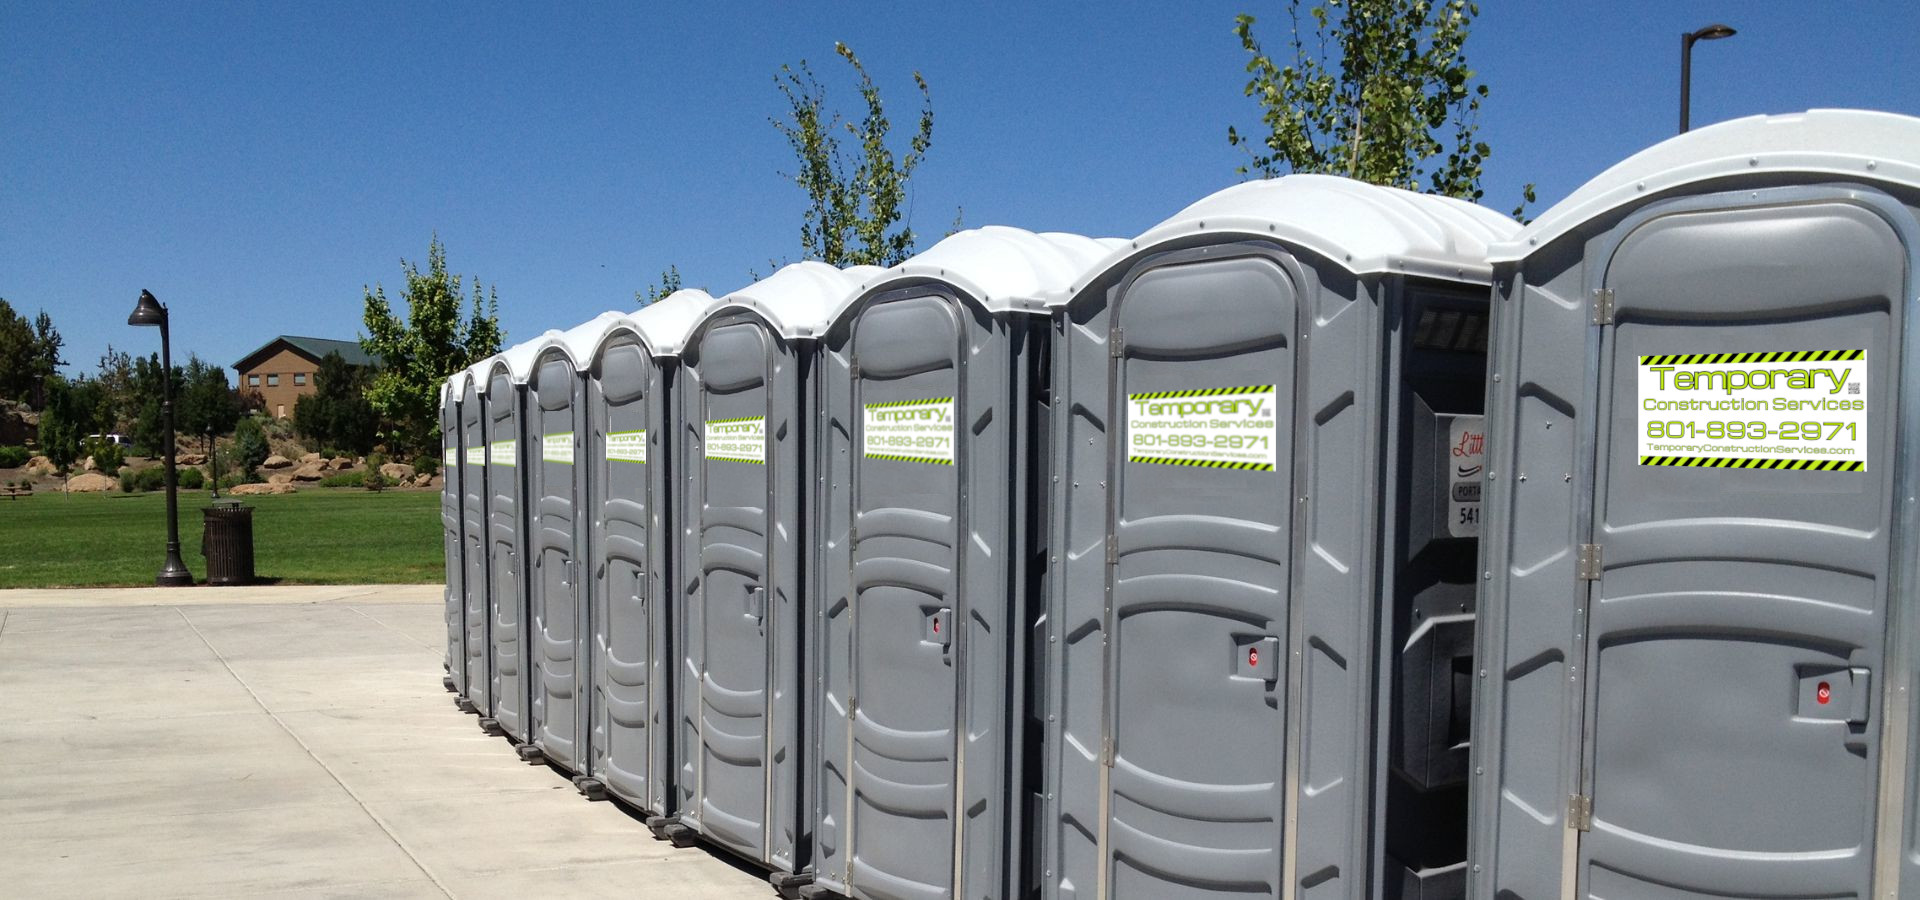 portable restrooms rentals porta potties construction sites Utah